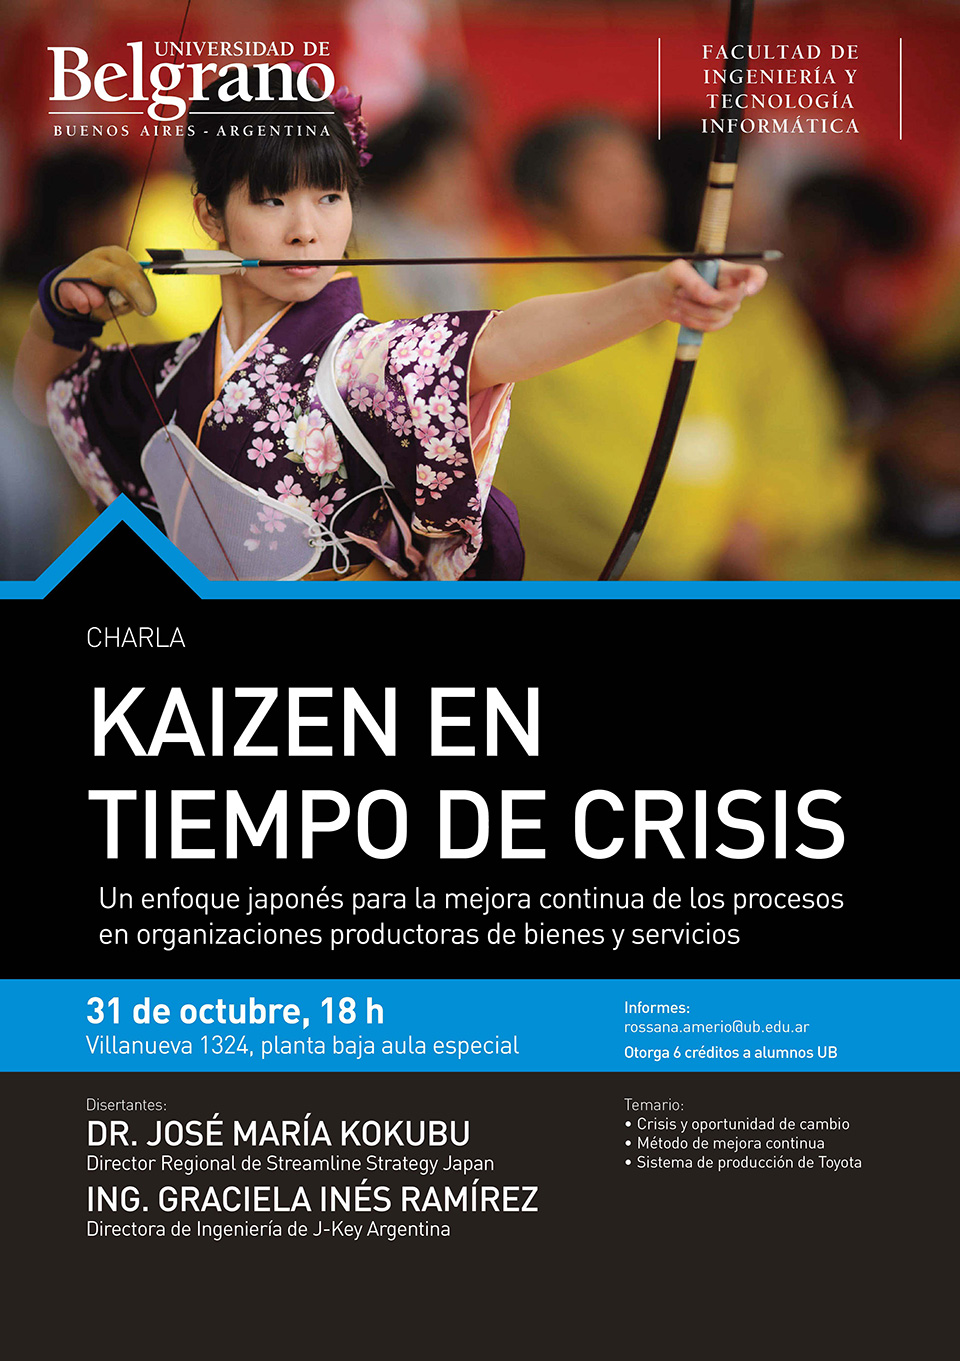 Universidad de Belgrano | KAIZEN en Tiempos de Crisis